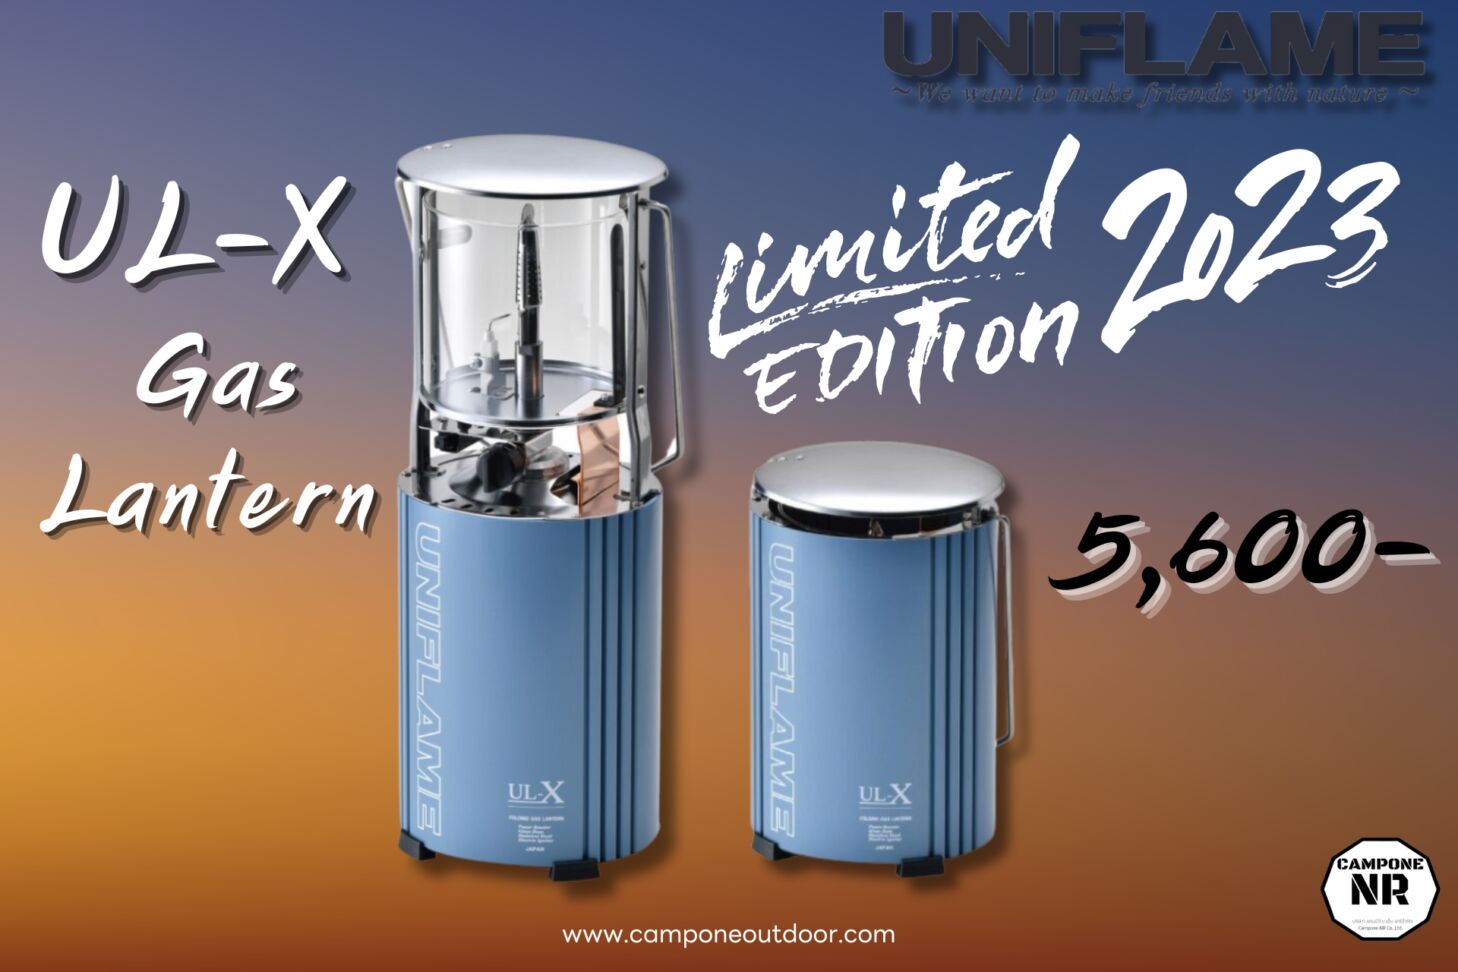 Uniflame UL-X Gas Lantern Limited Edition